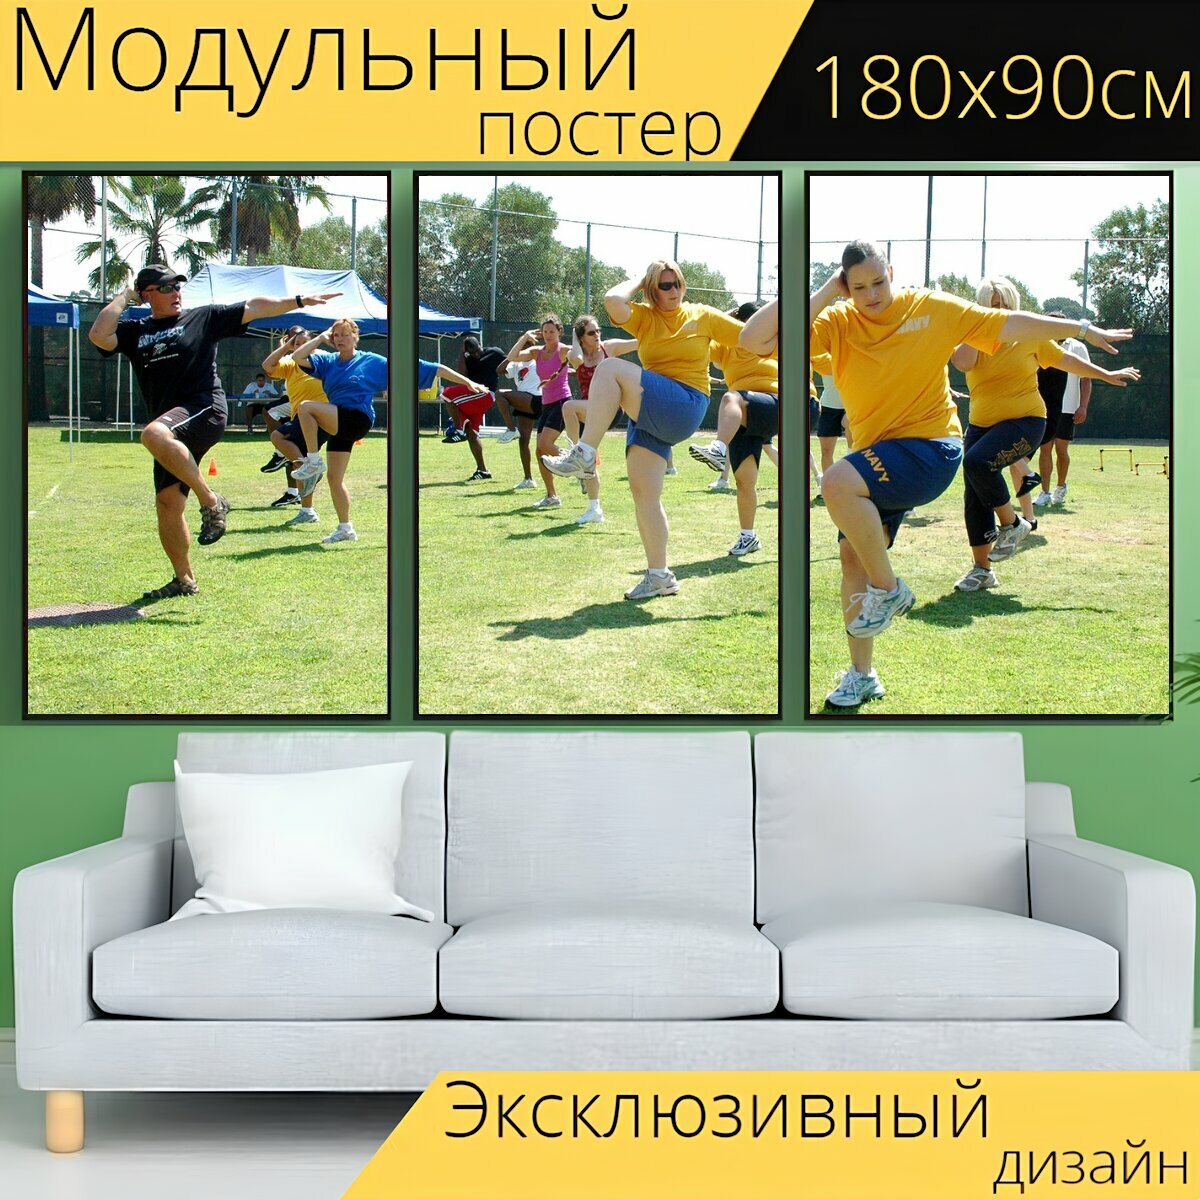 Модульный постер "Спортзал, фитнес, спорт" 180 x 90 см. для интерьера